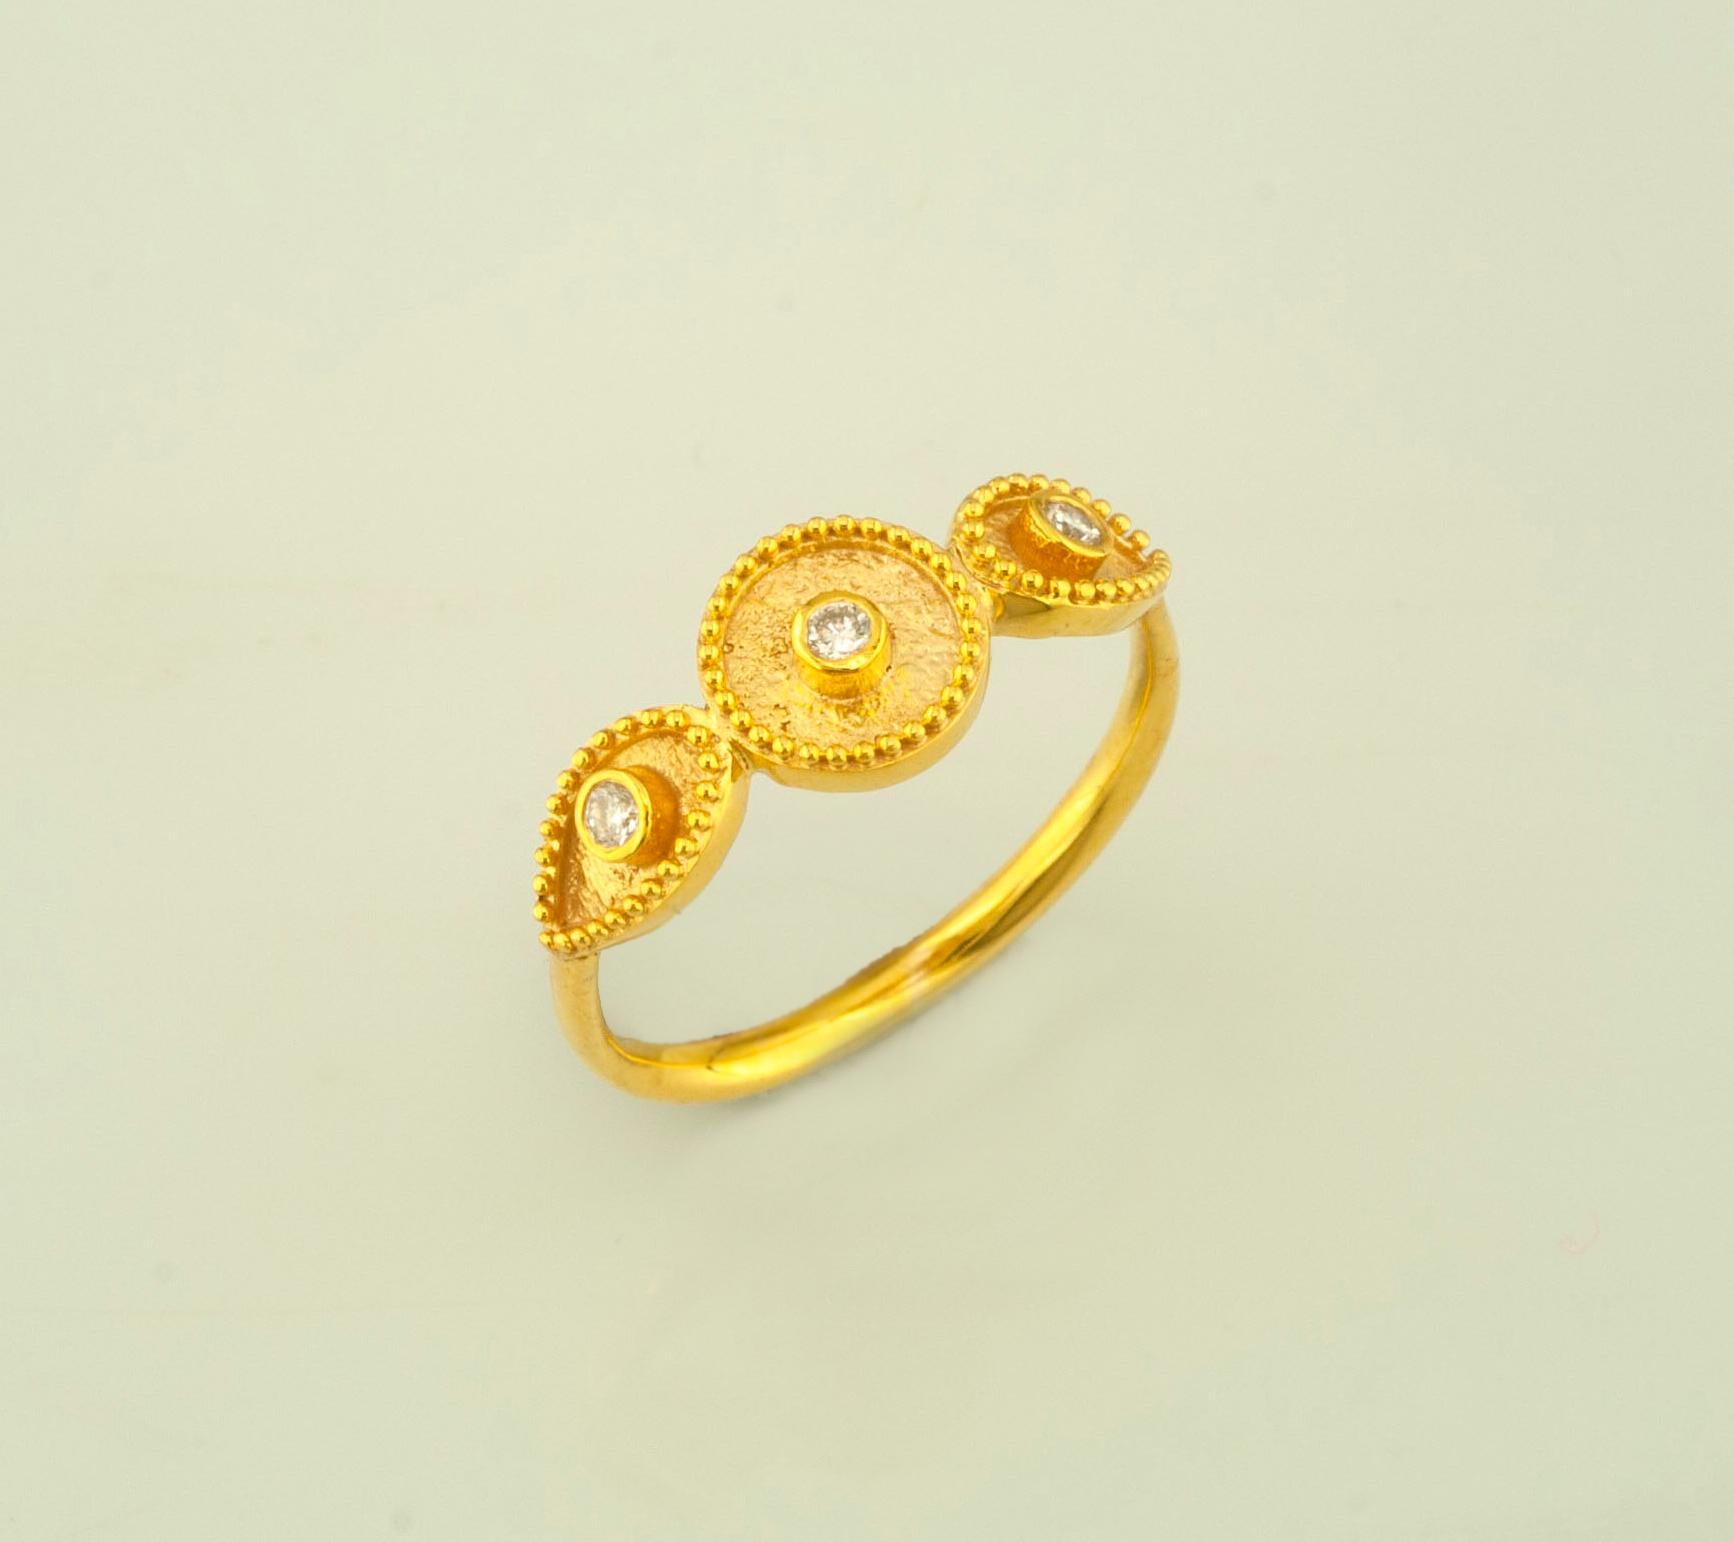 La bague à anneau fin de S.Georgios est en or jaune 18 carats et décorée au microscope avec un travail de granulation fait à la main, et finie avec un aspect velours contrasté unique. Ce magnifique bracelet fin comporte 3 diamants blancs taille